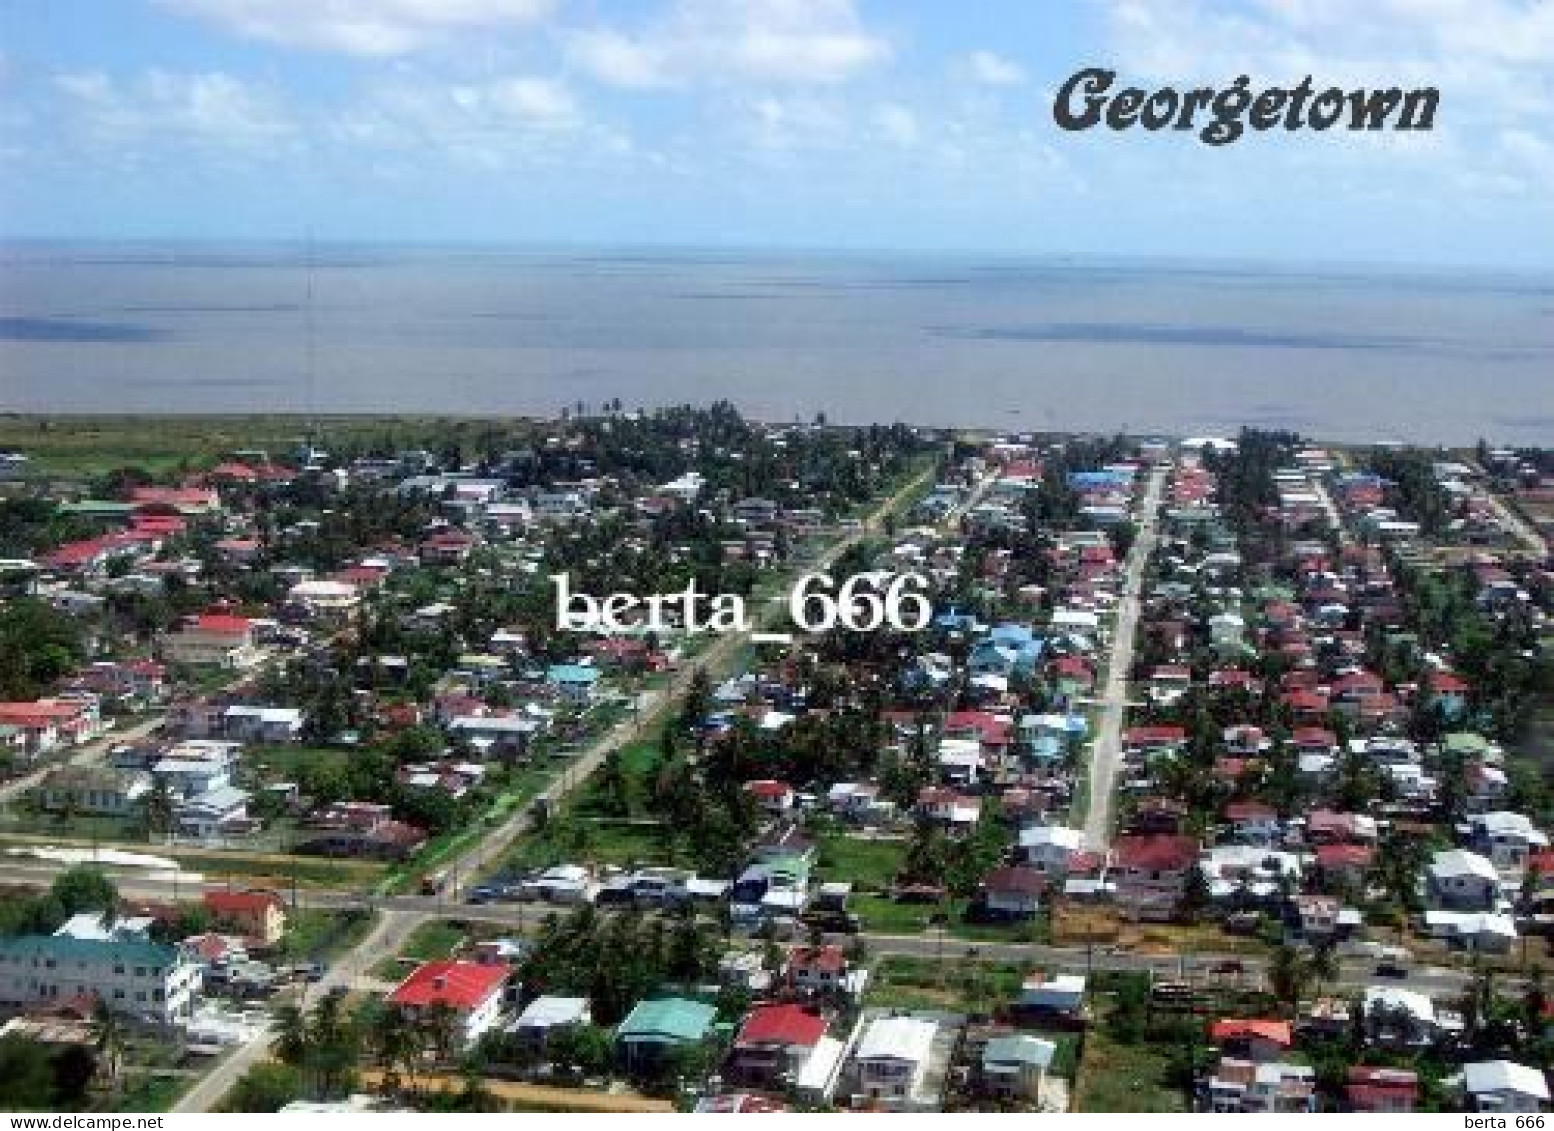 Guyana Georgetown Aerial View New Postcard - Guyana (formerly British Guyana)